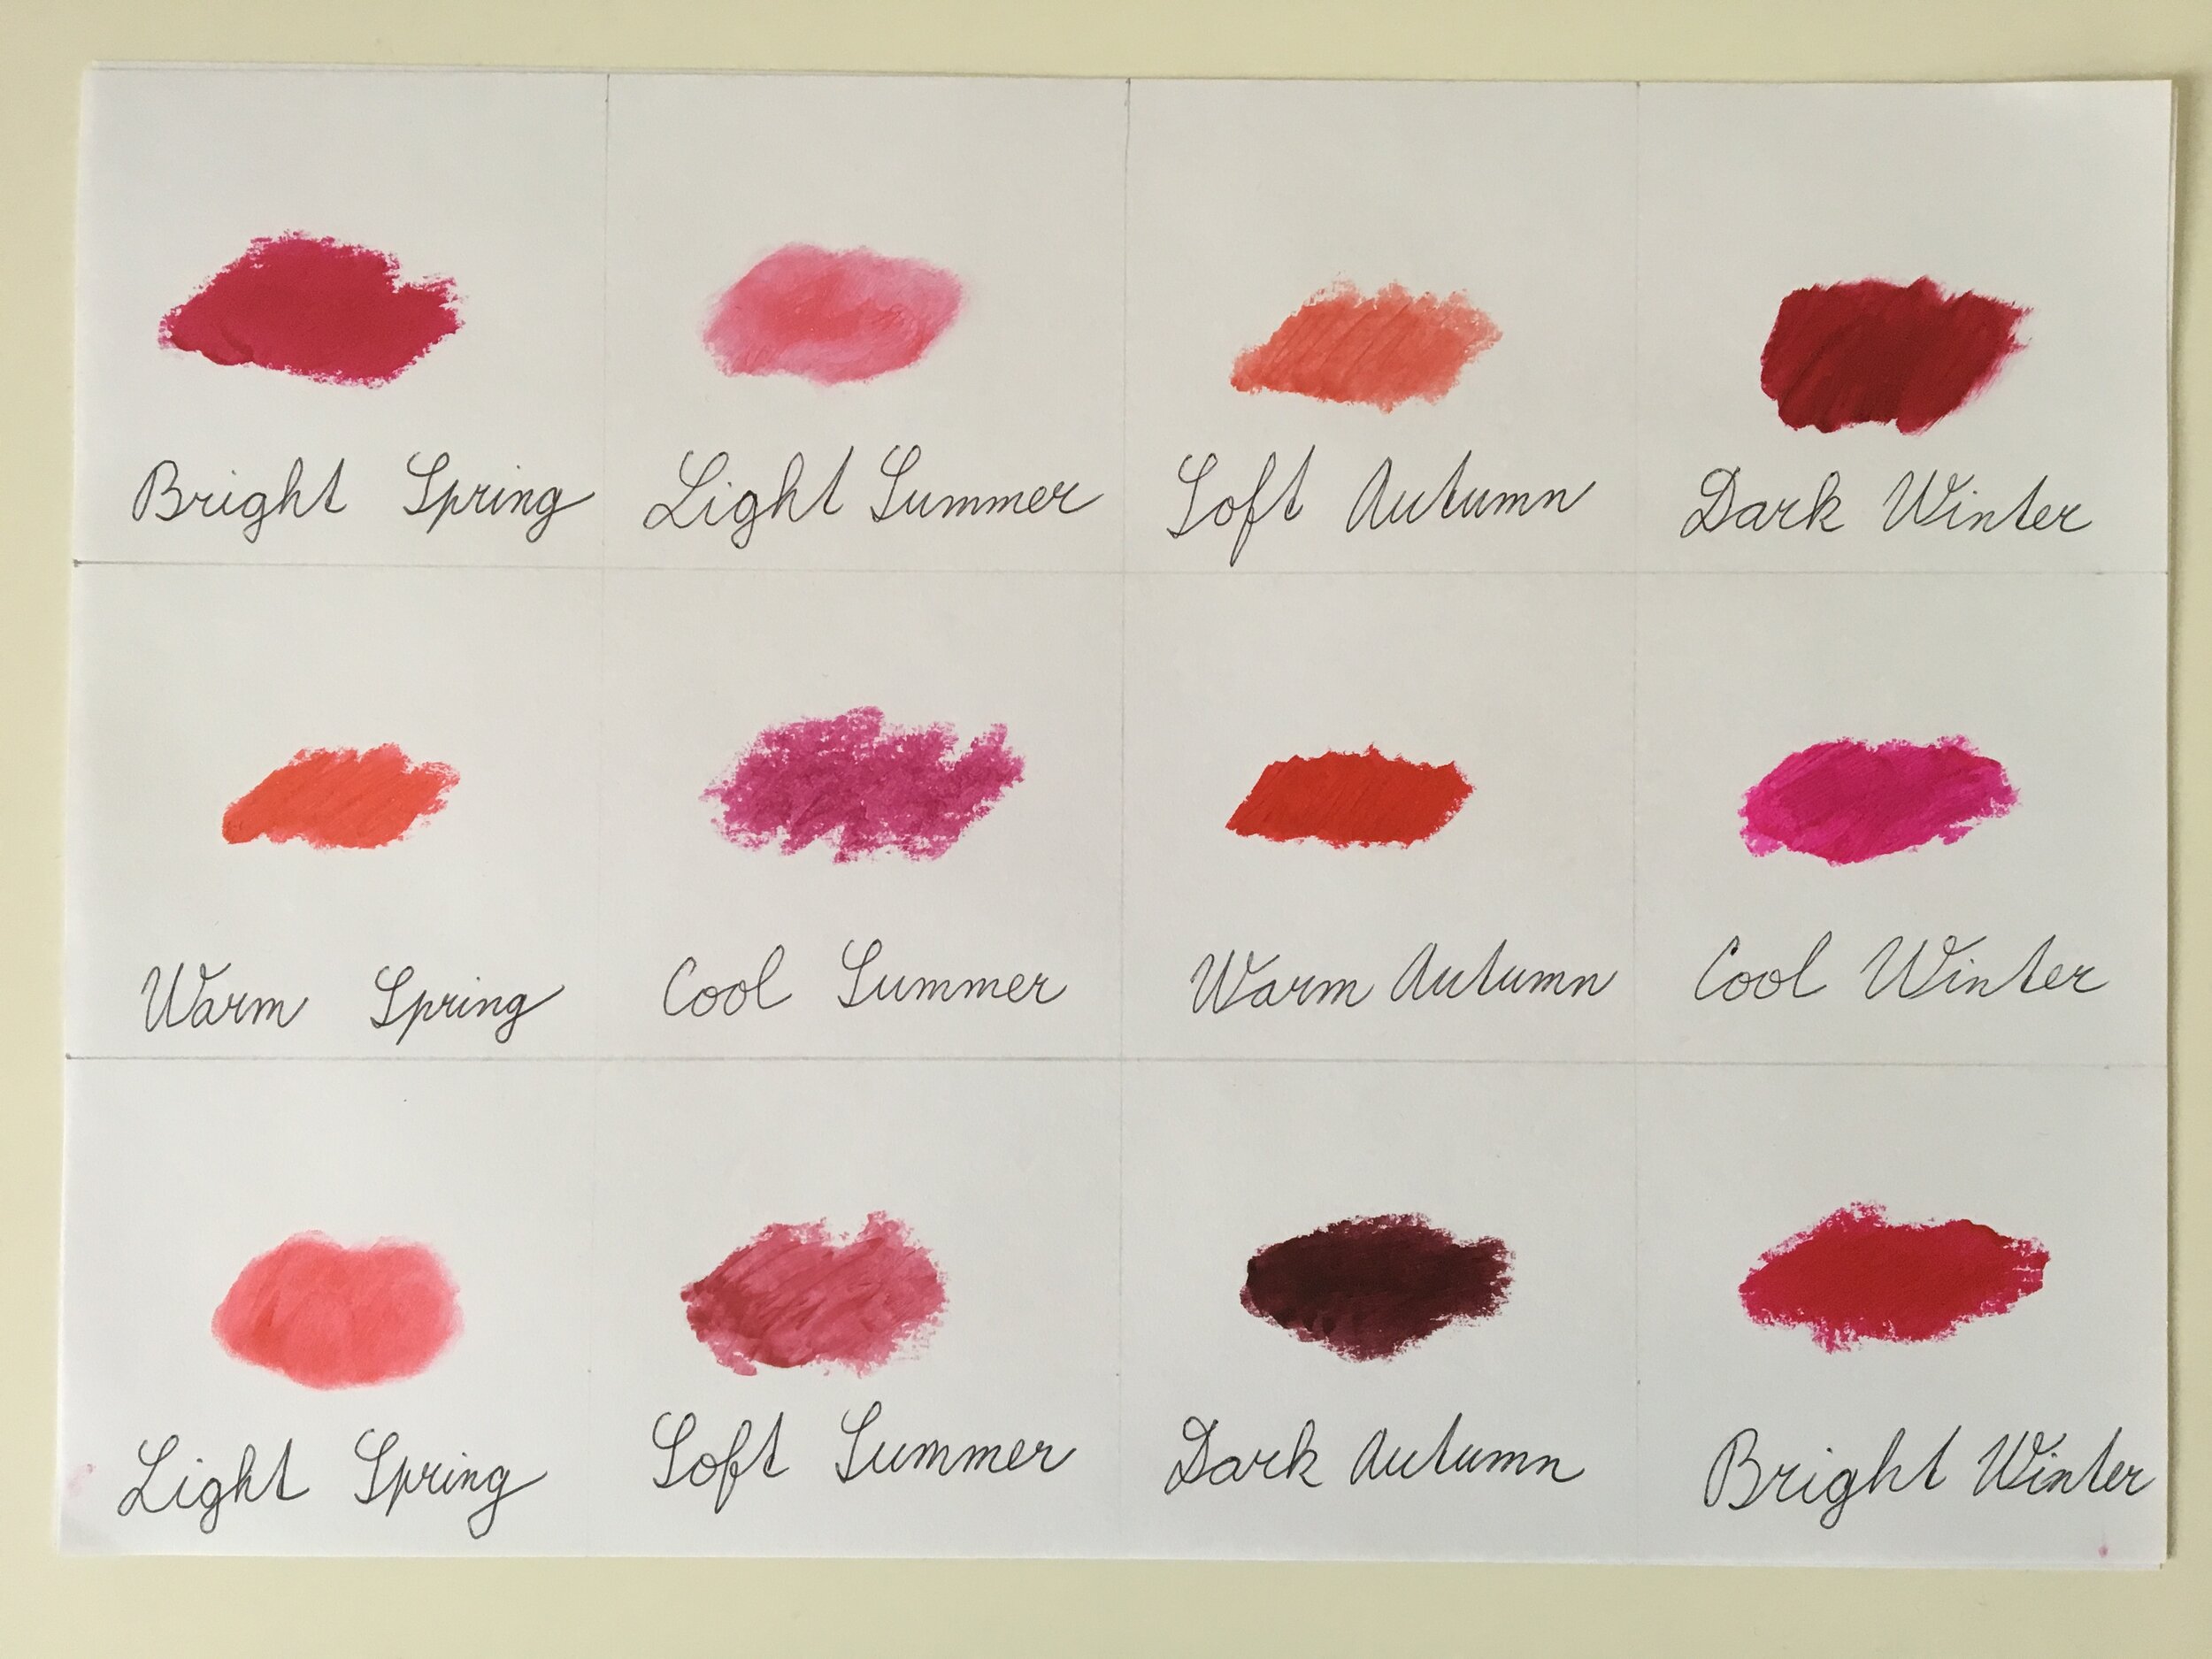 12 Best Winter MAC Lipstick Shades from Fair to Dark Skin